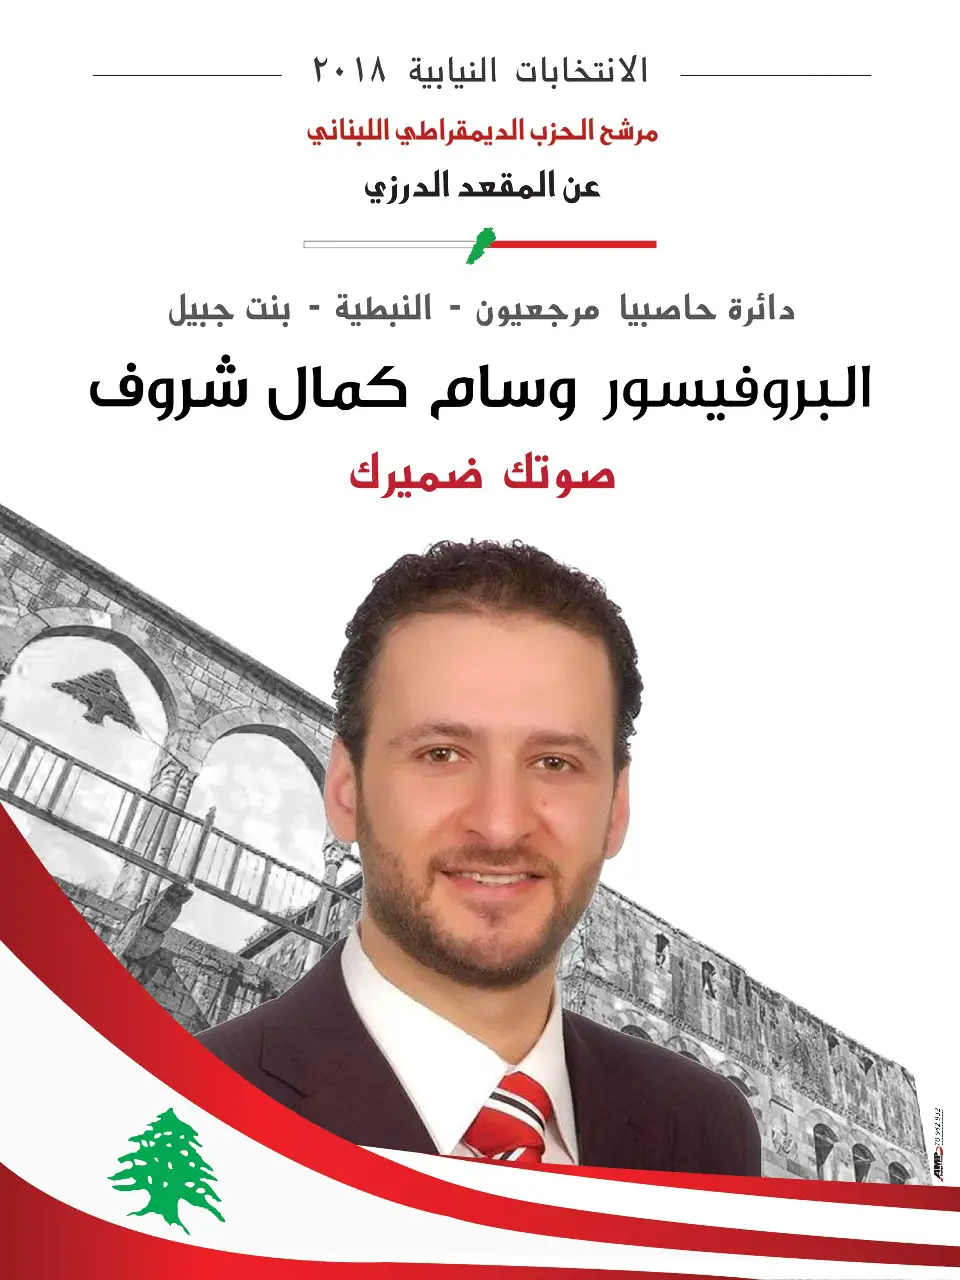 البروفسور وسام شروف، عضو المجلس السياسي في الحزب الديمقراطي اللبناني